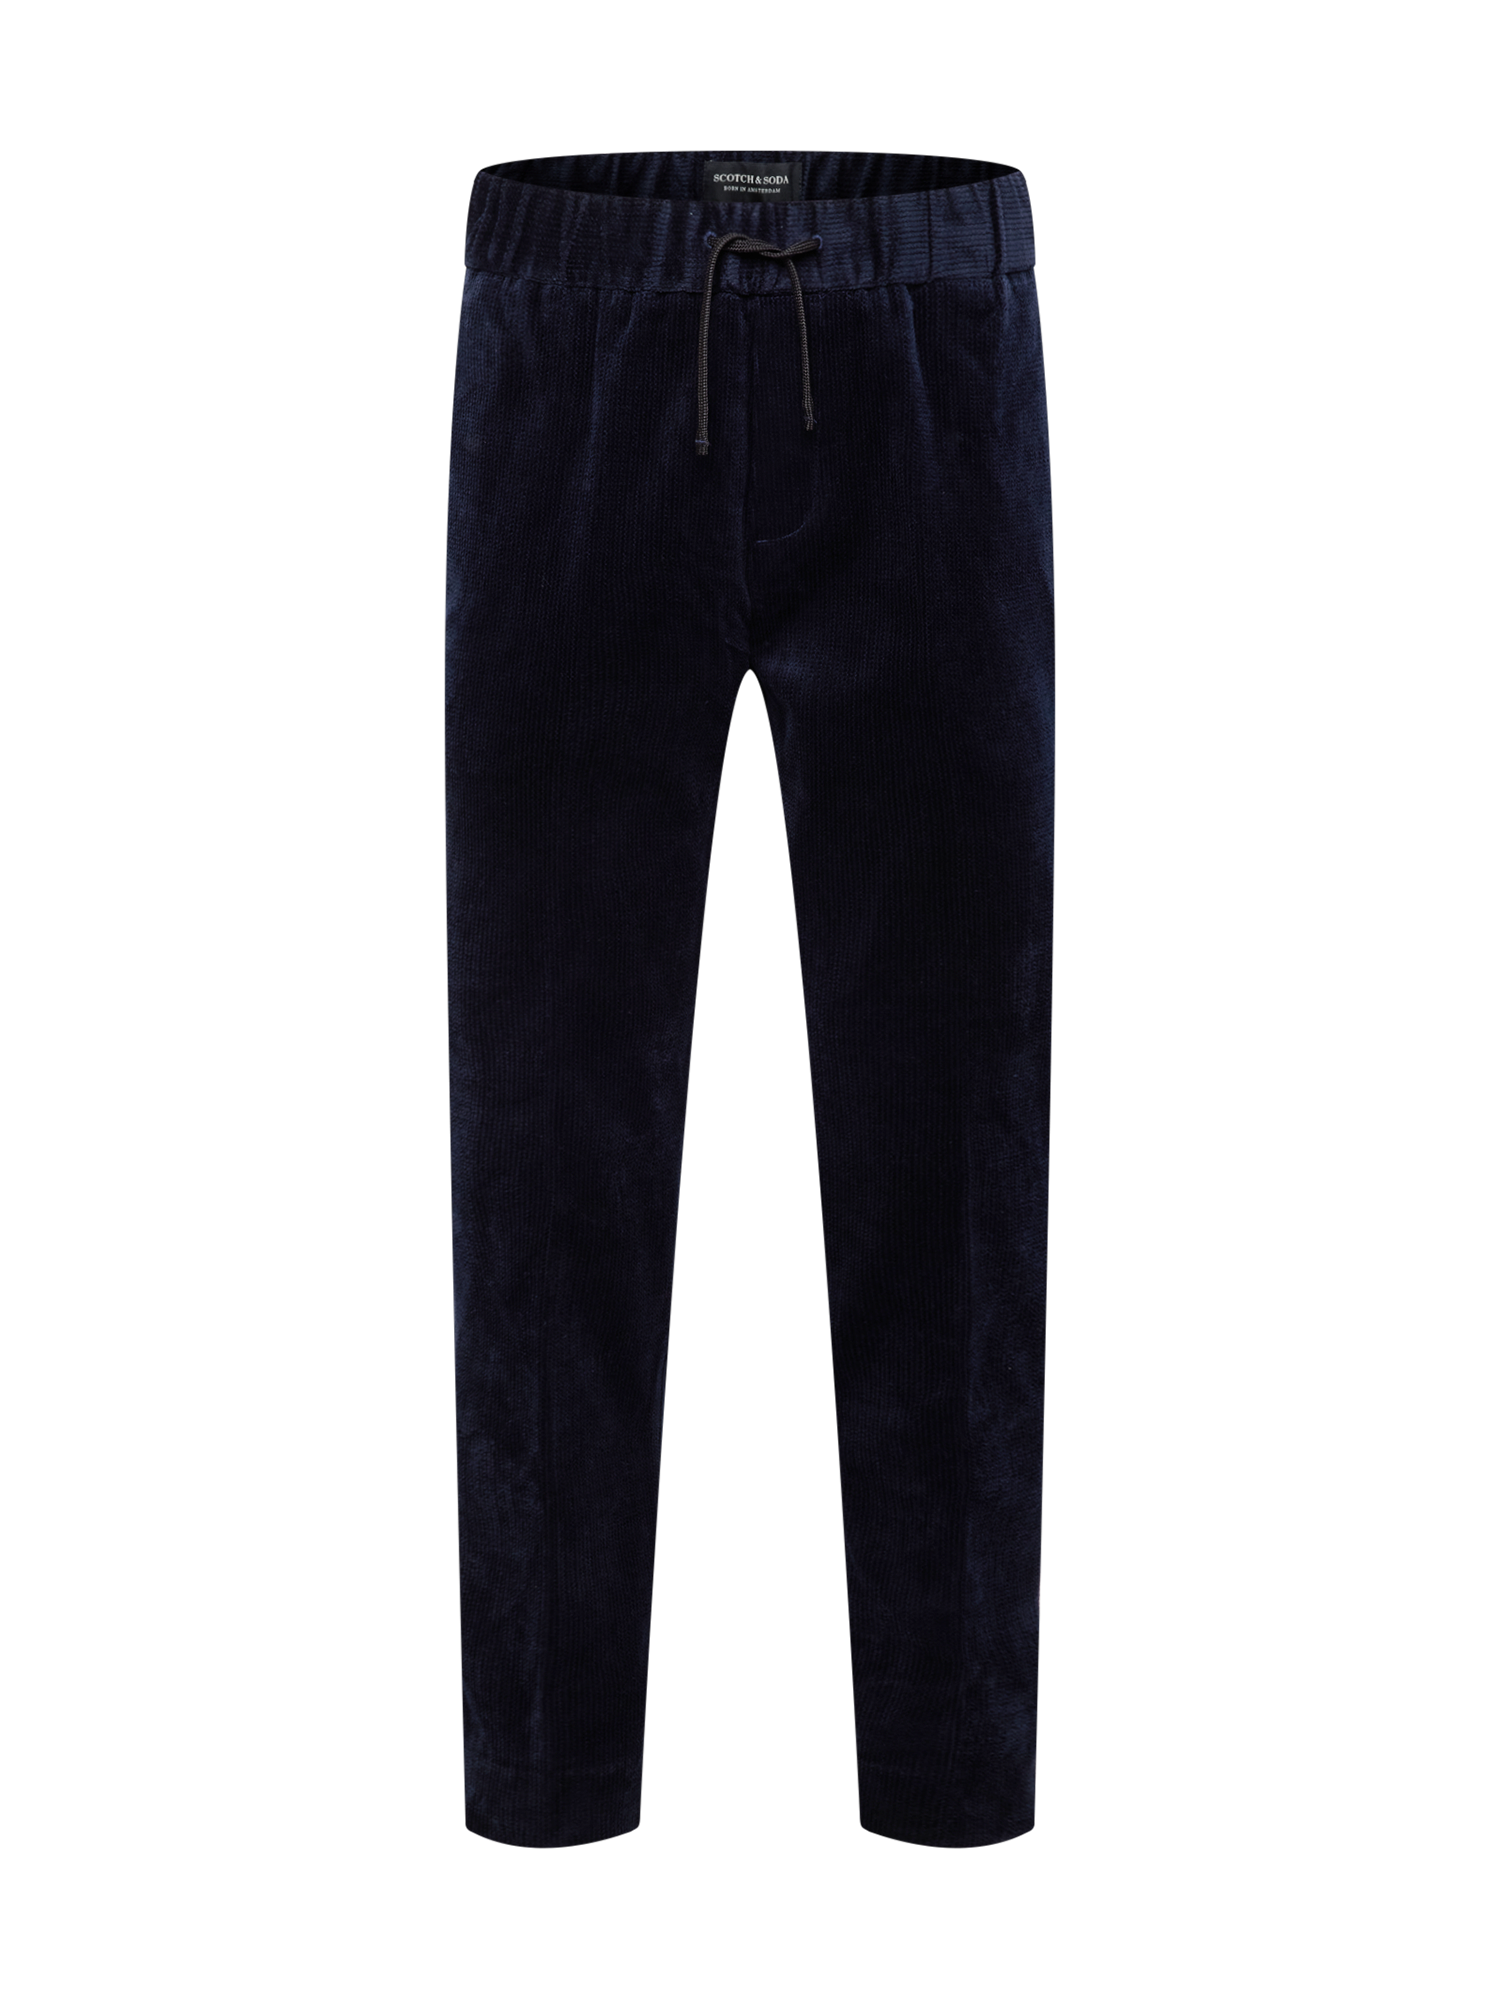 Odzież Mężczyźni SCOTCH & SODA Spodnie w kolorze Granatowym 